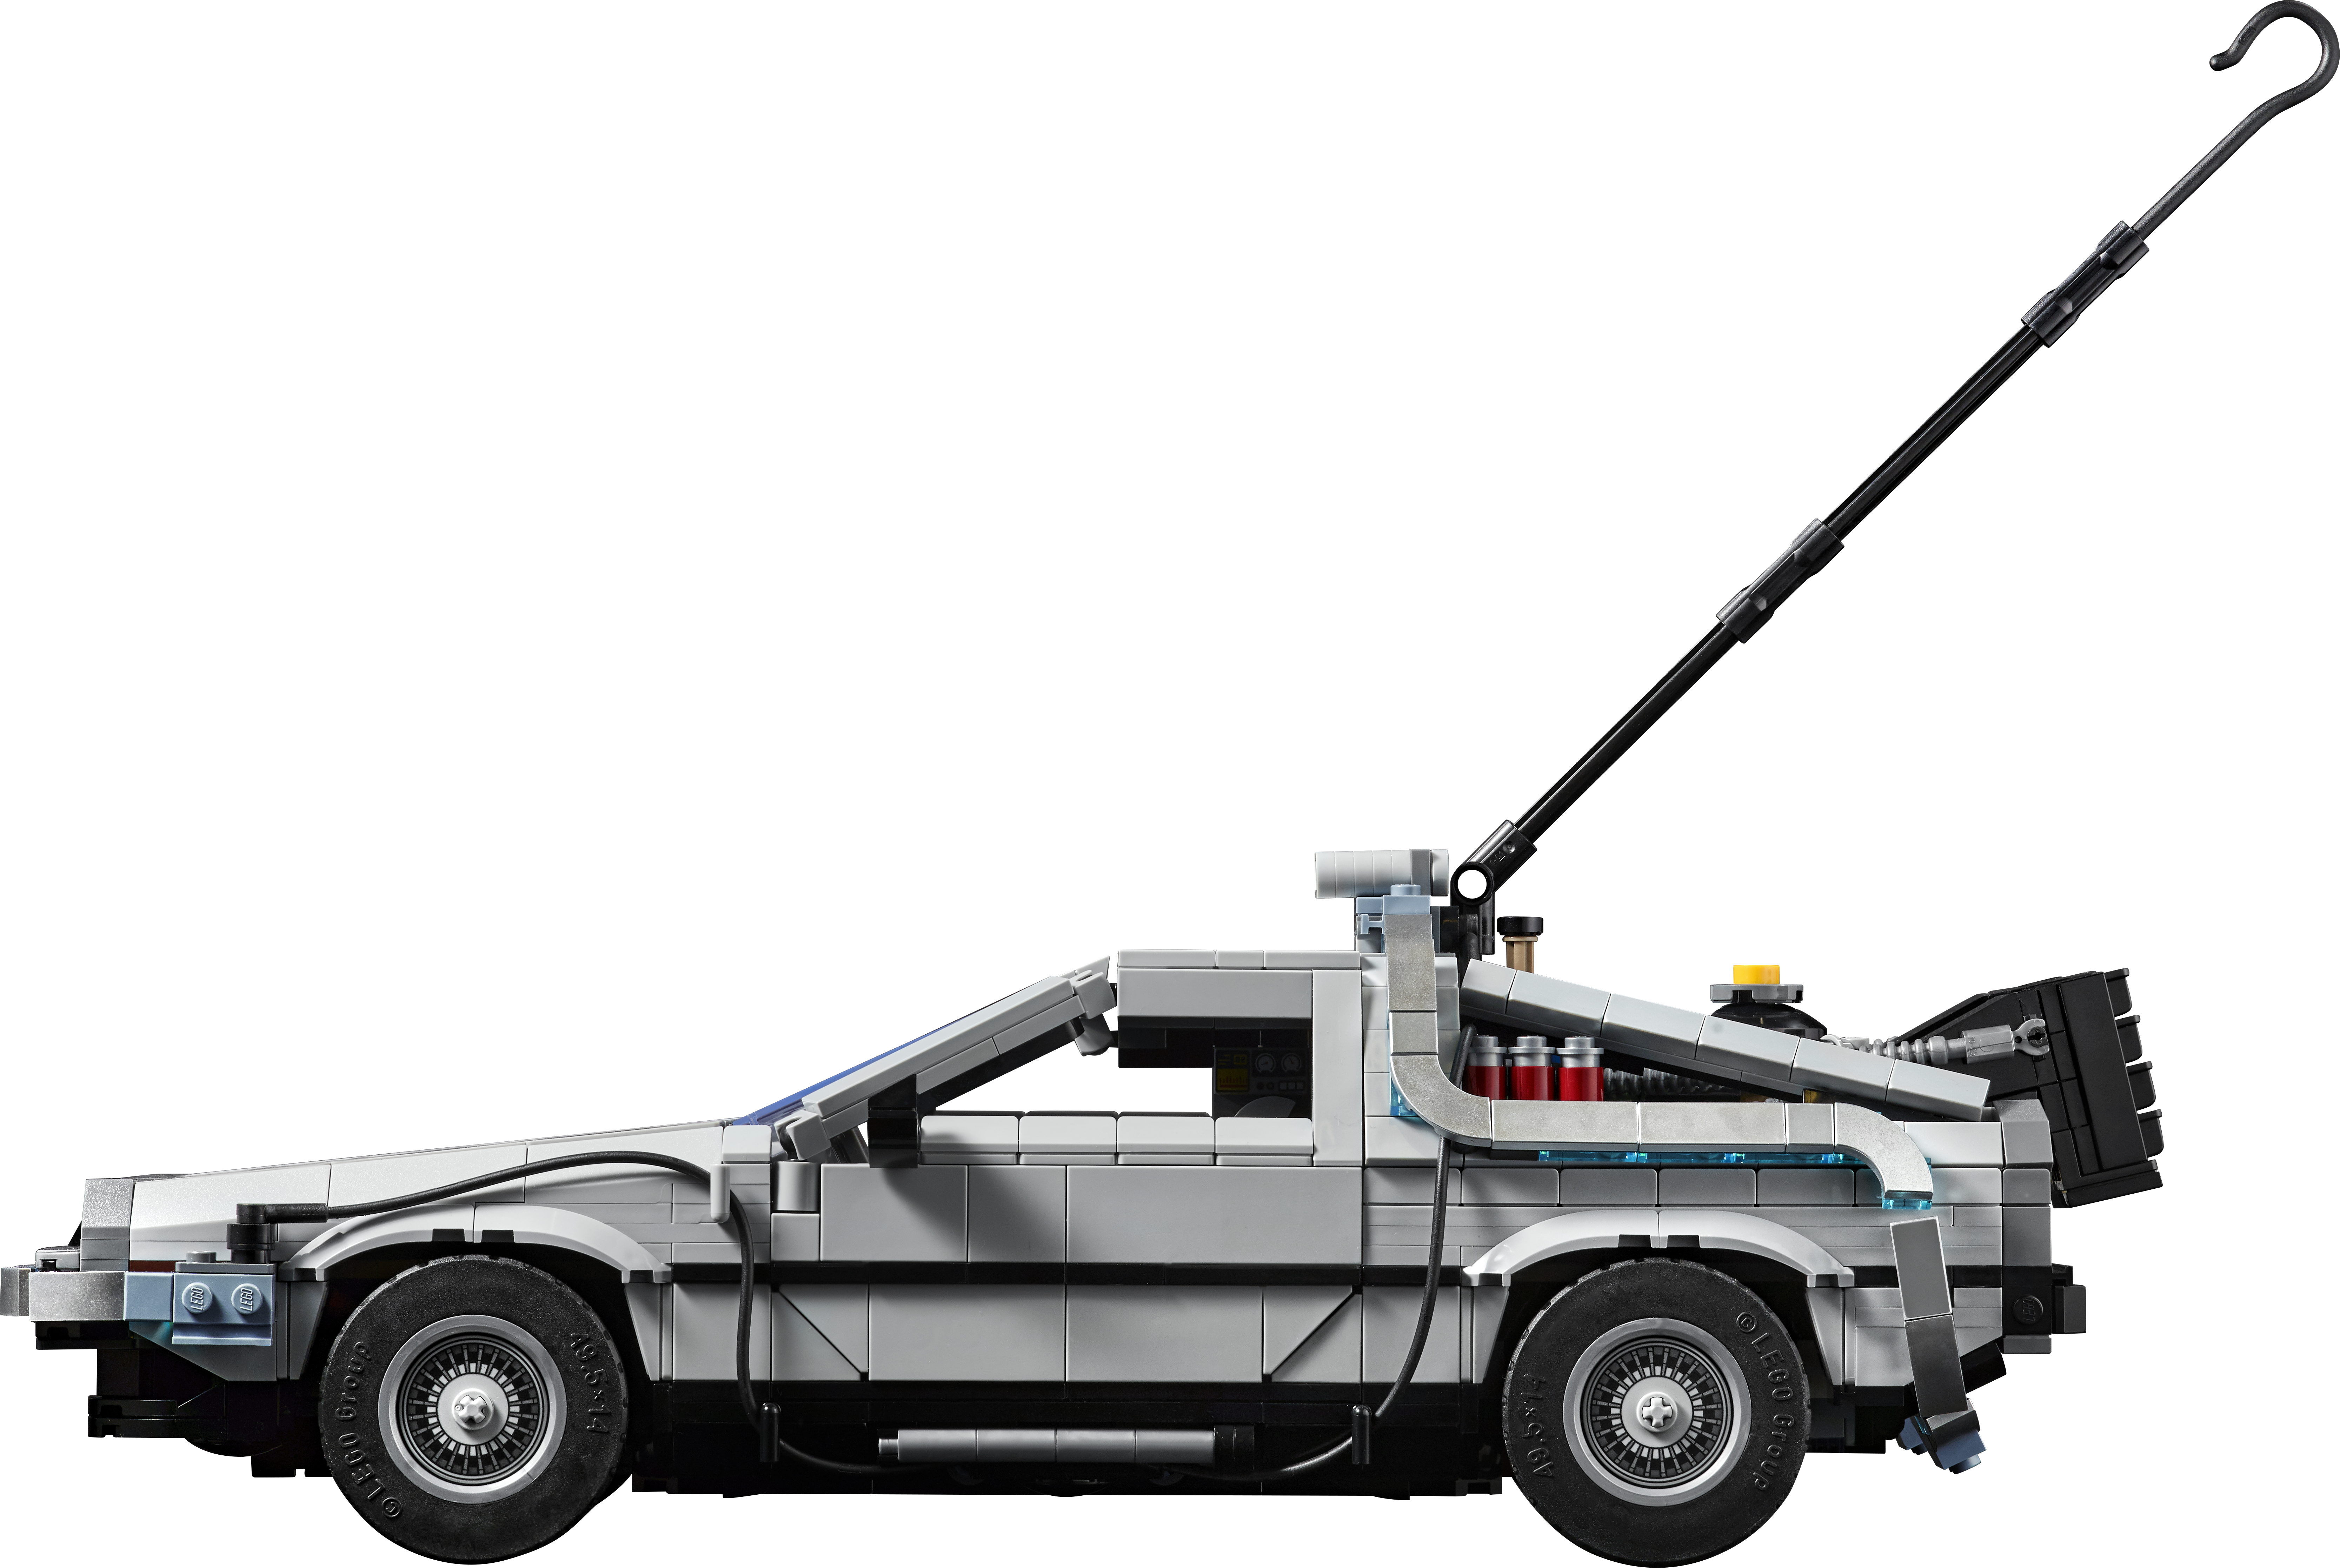 LEGO Back to the Future Delorean DMC-12 10300